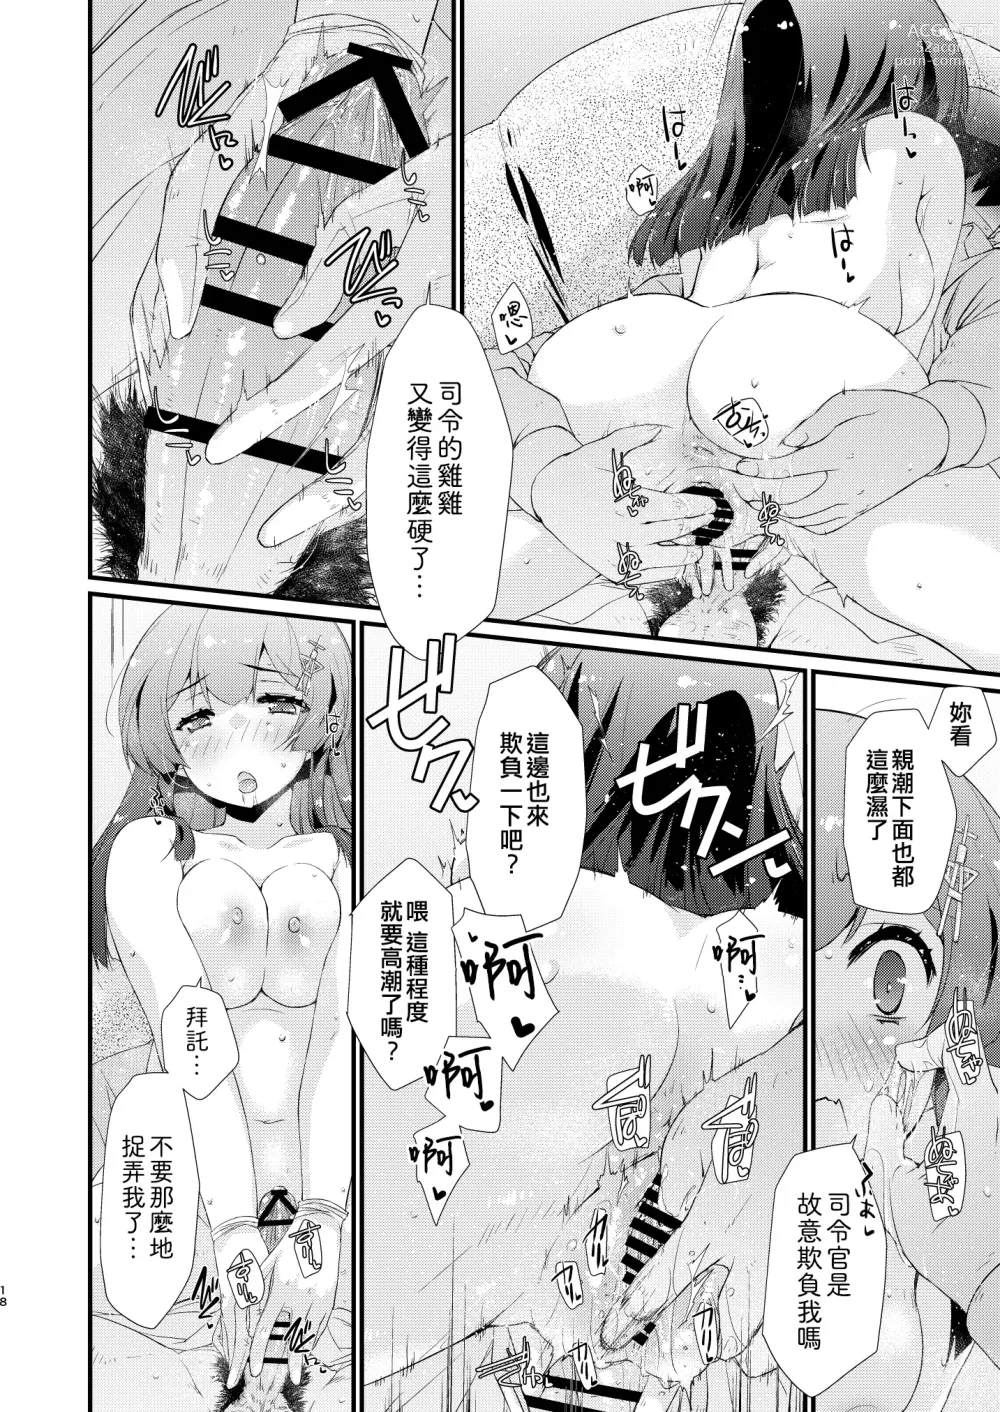 Page 18 of doujinshi Oyashio-chan no Koki Tebukuro.